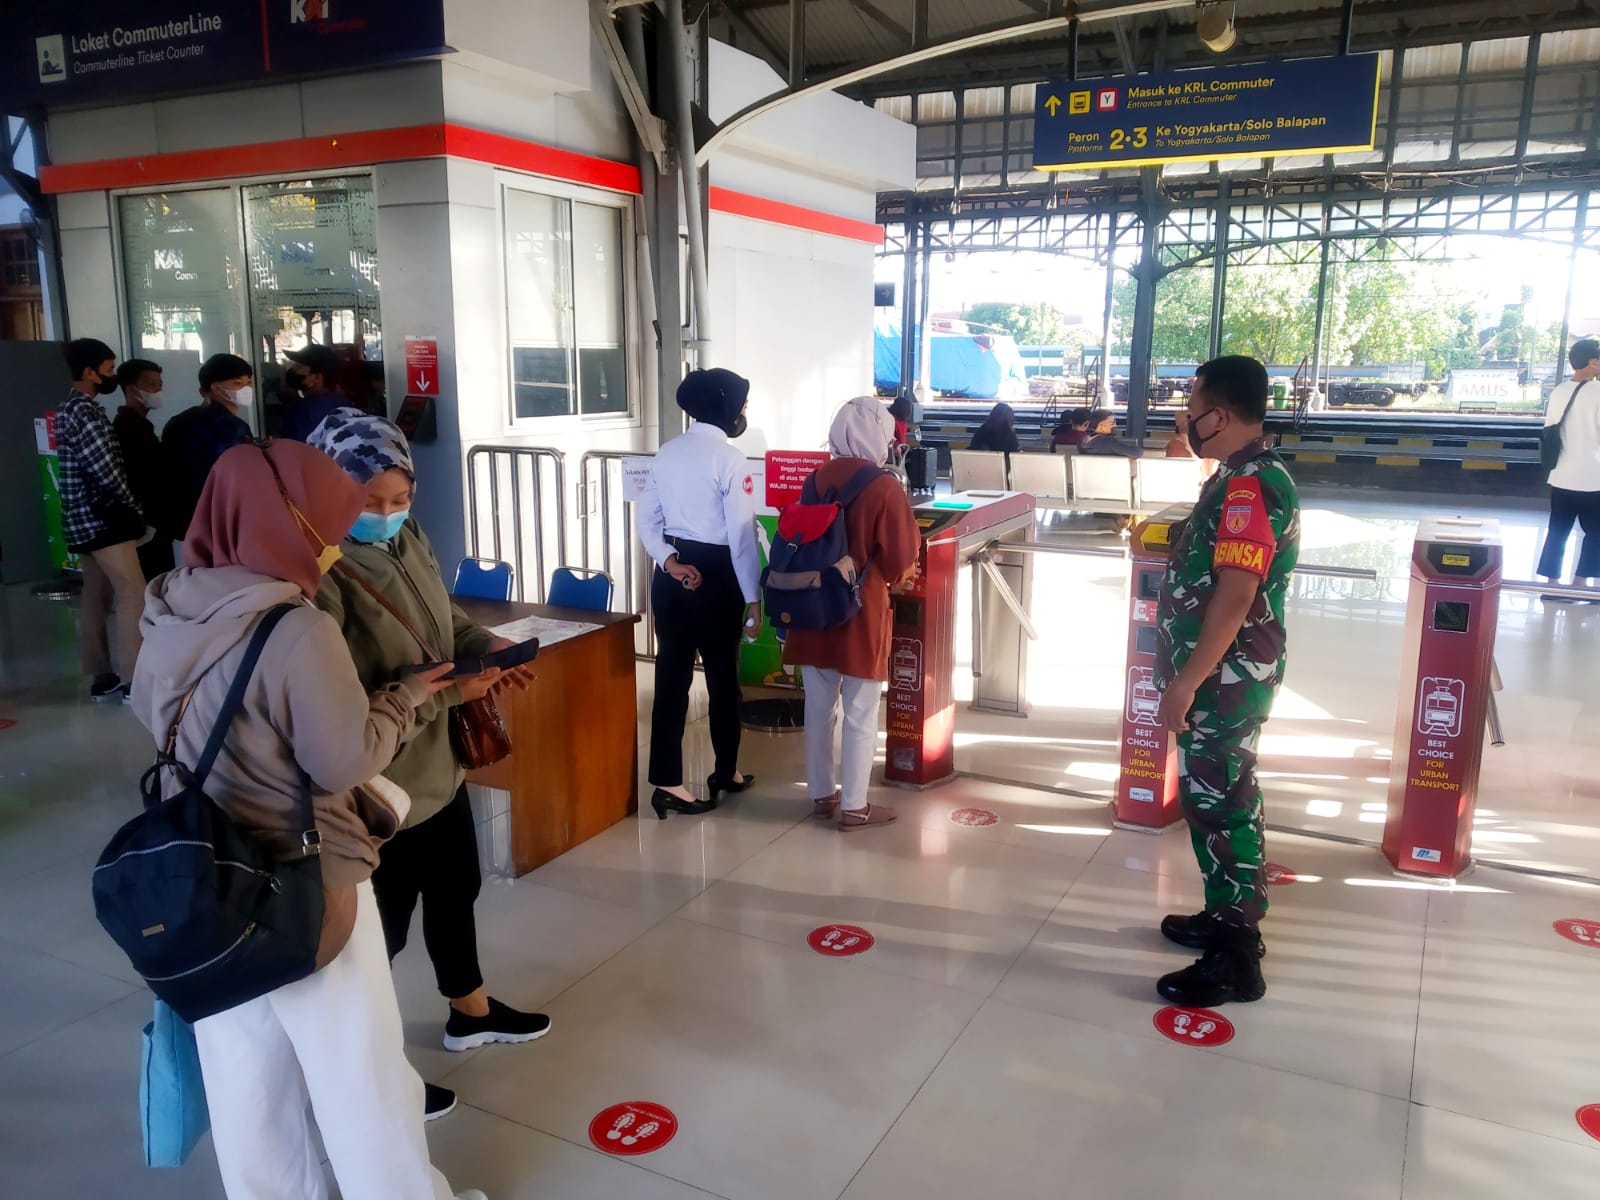 Sinergi..!! Sertu Murdianto Bersama Petugas Stasiun Dan Security Berikan Himbauan Prokes Kepada Penumpang Di Stasiun Purwosari